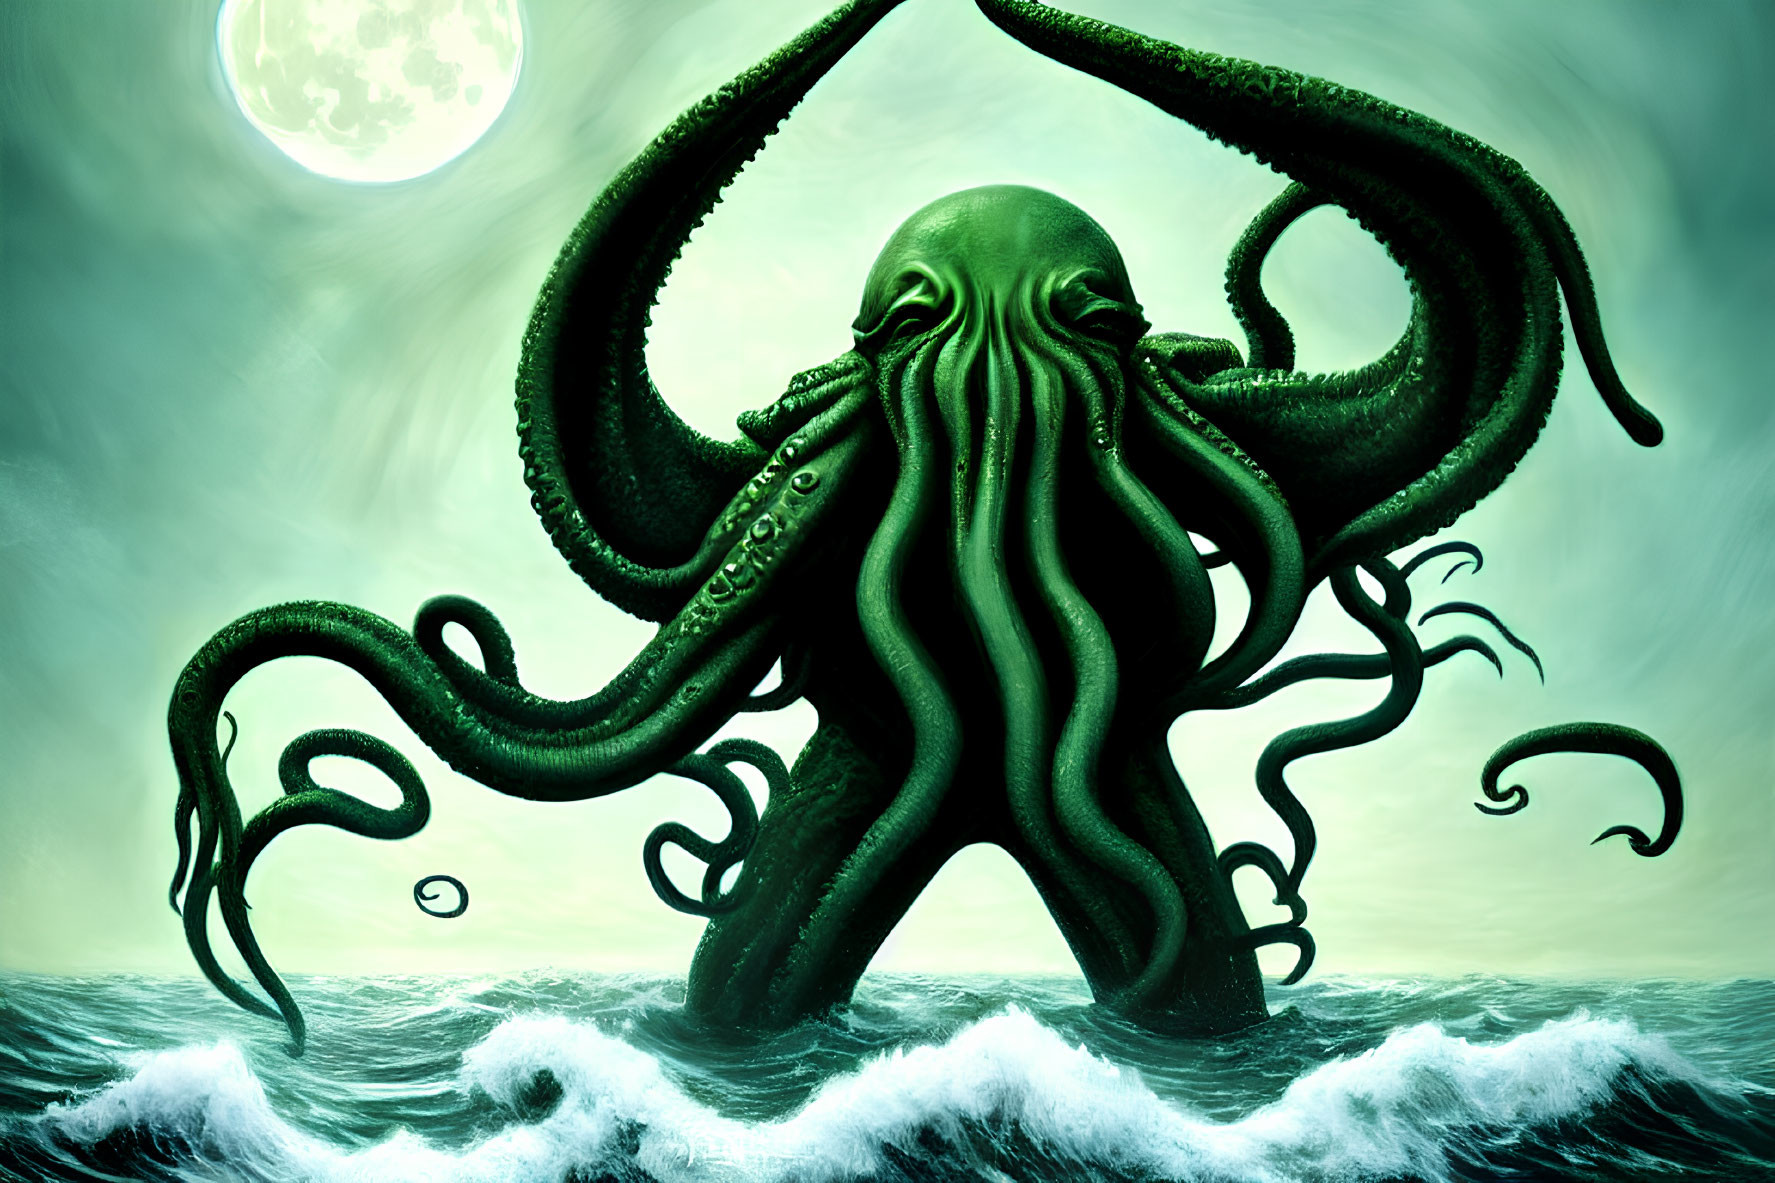 Gigantic green octopus with towering tentacles under eerie moonlit sky